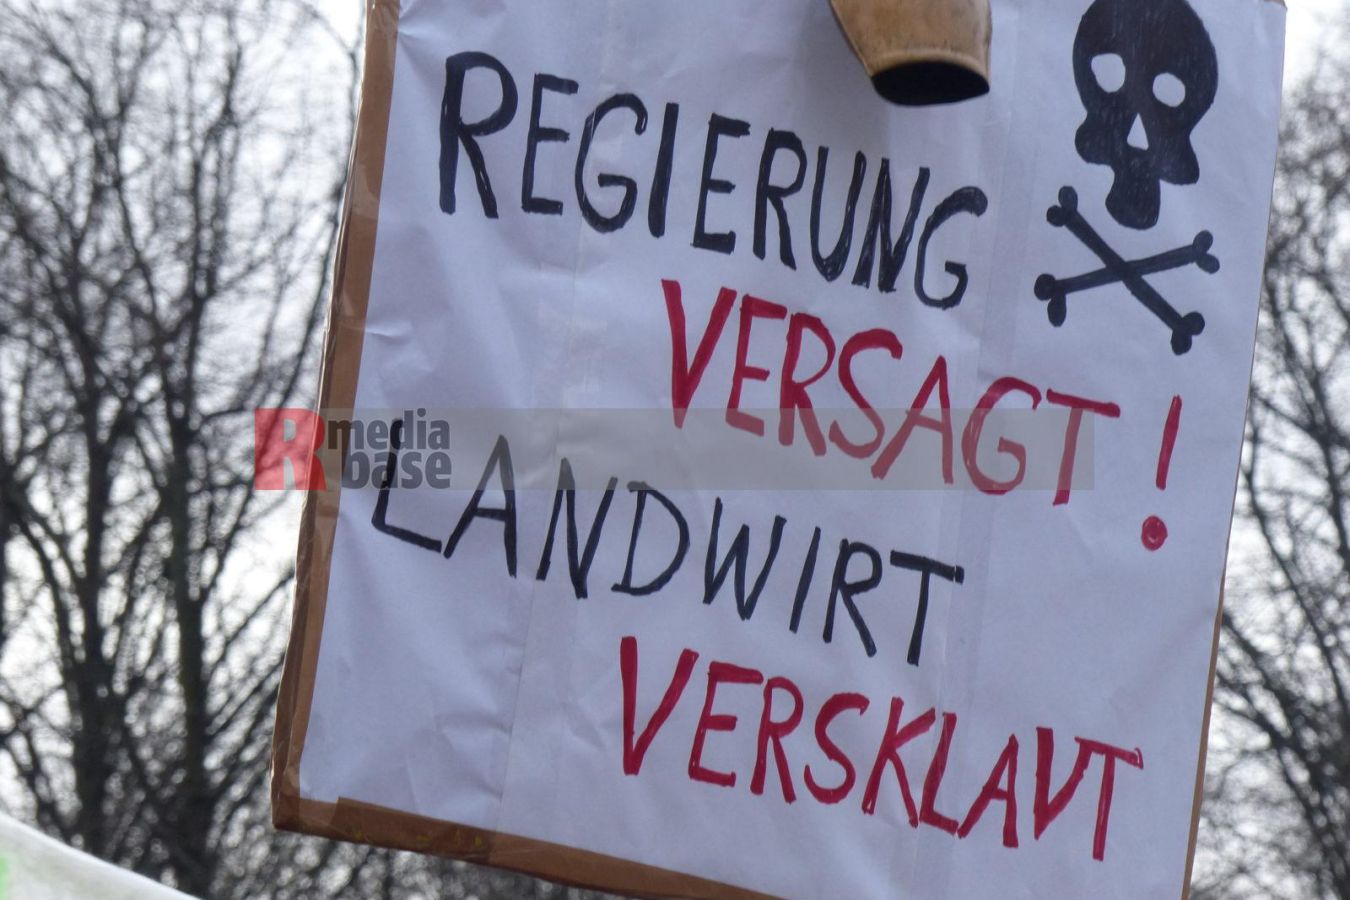 Bauernprotest in Berlin <i>Bild Denner/R-mediabase</i> <br><a href=/confor2/?bld=79036&pst=78995&aid=86&i1=Denner/R-mediabase>Download Bild 79036</a>  <br><a href=/?p=78995>Zum Beitrag 78995</a>